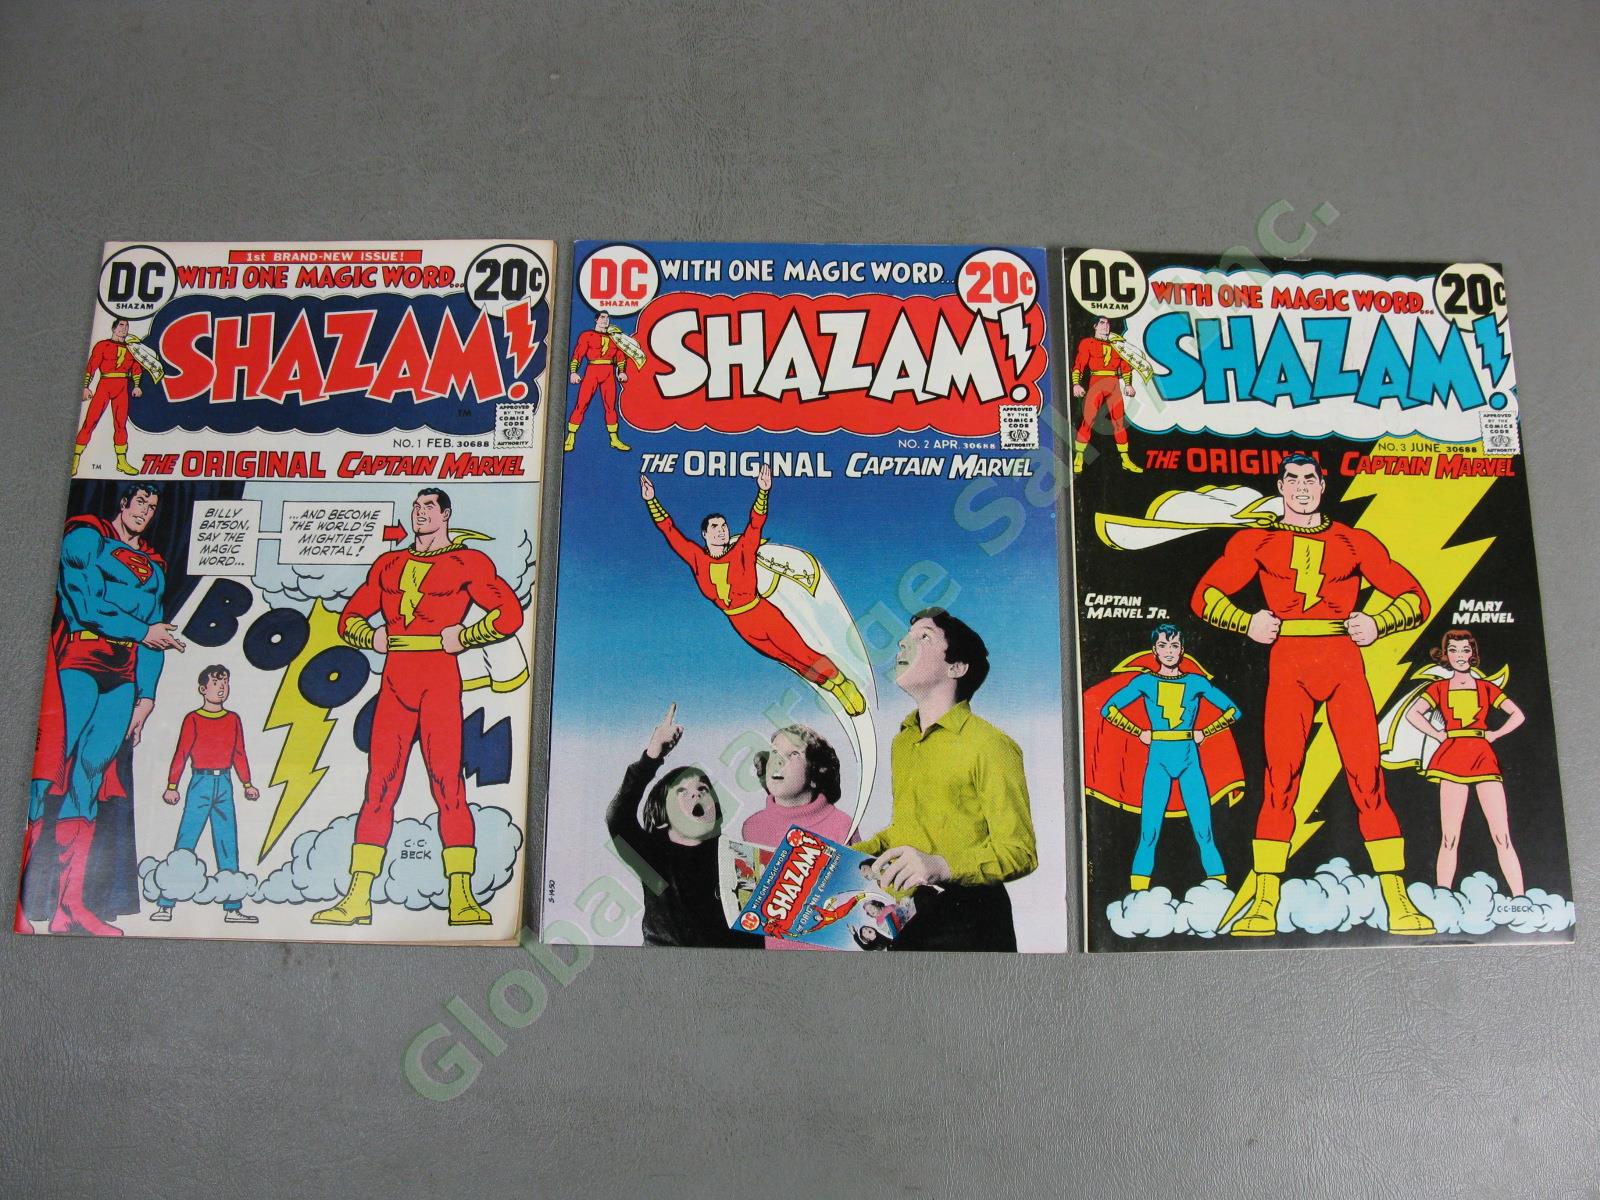 Vtg 1973 Shazam! 1 2 3 Original Captain Marvel Comic Book Lot Set High Grade NR!